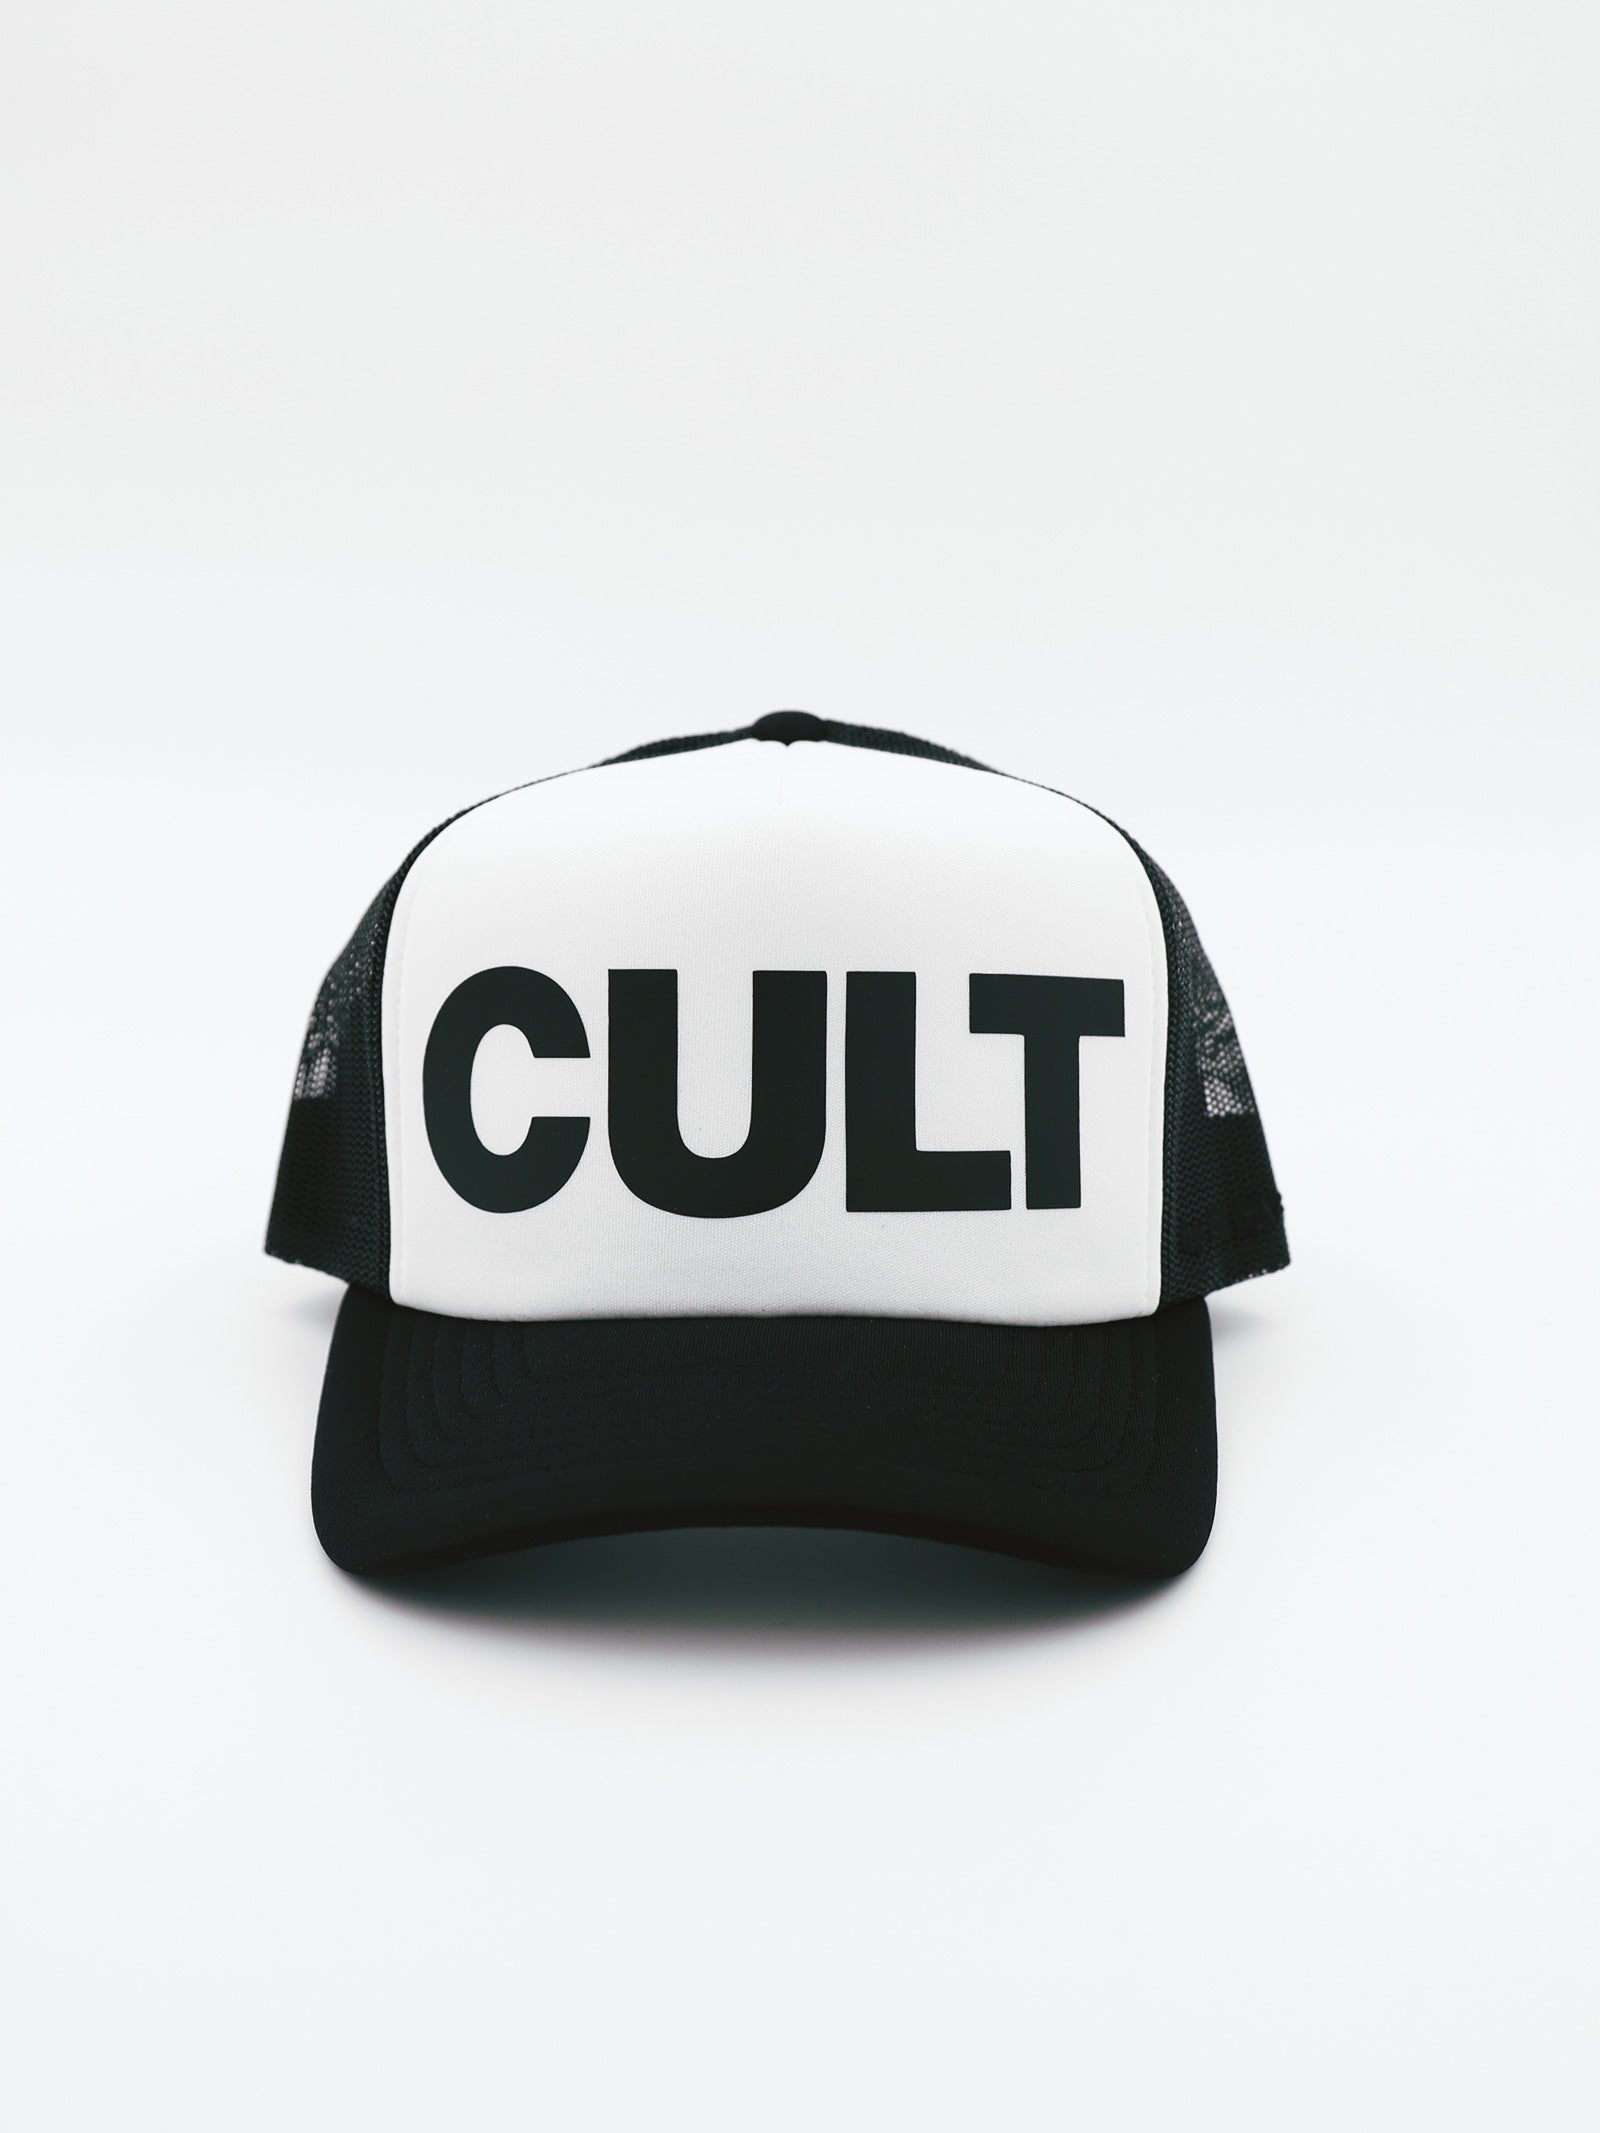 Black¹ Cult Trucker Cap